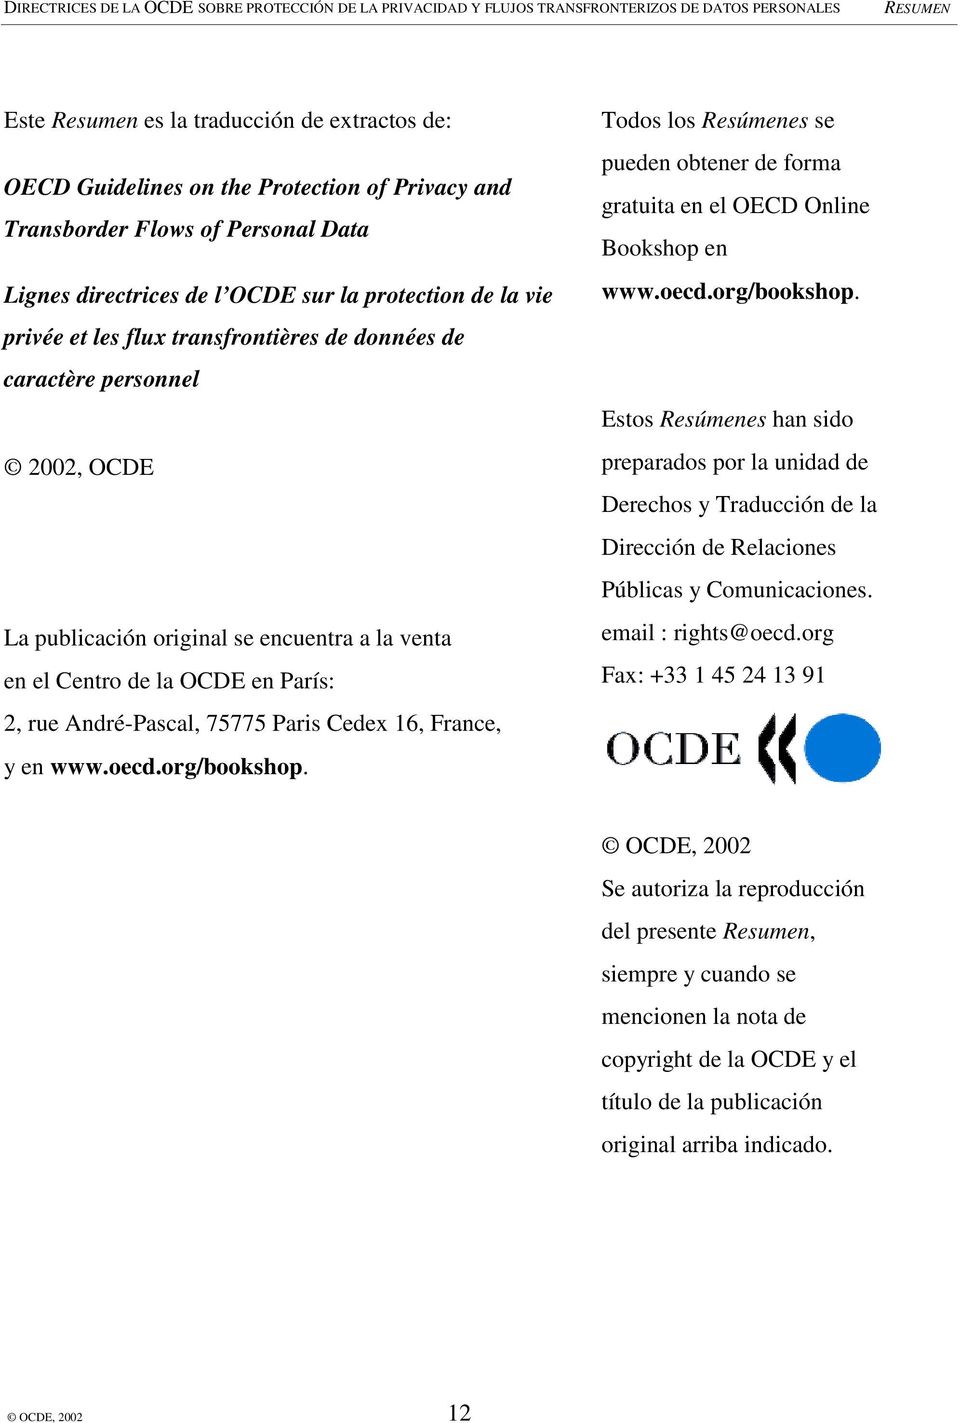 France, y en www.oecd.org/bookshop. Todos los Resúmenes se pueden obtener de forma gratuita en el OECD Online Bookshop en www.oecd.org/bookshop. Estos Resúmenes han sido preparados por la unidad de Derechos y Traducción de la Dirección de Relaciones Públicas y Comunicaciones.